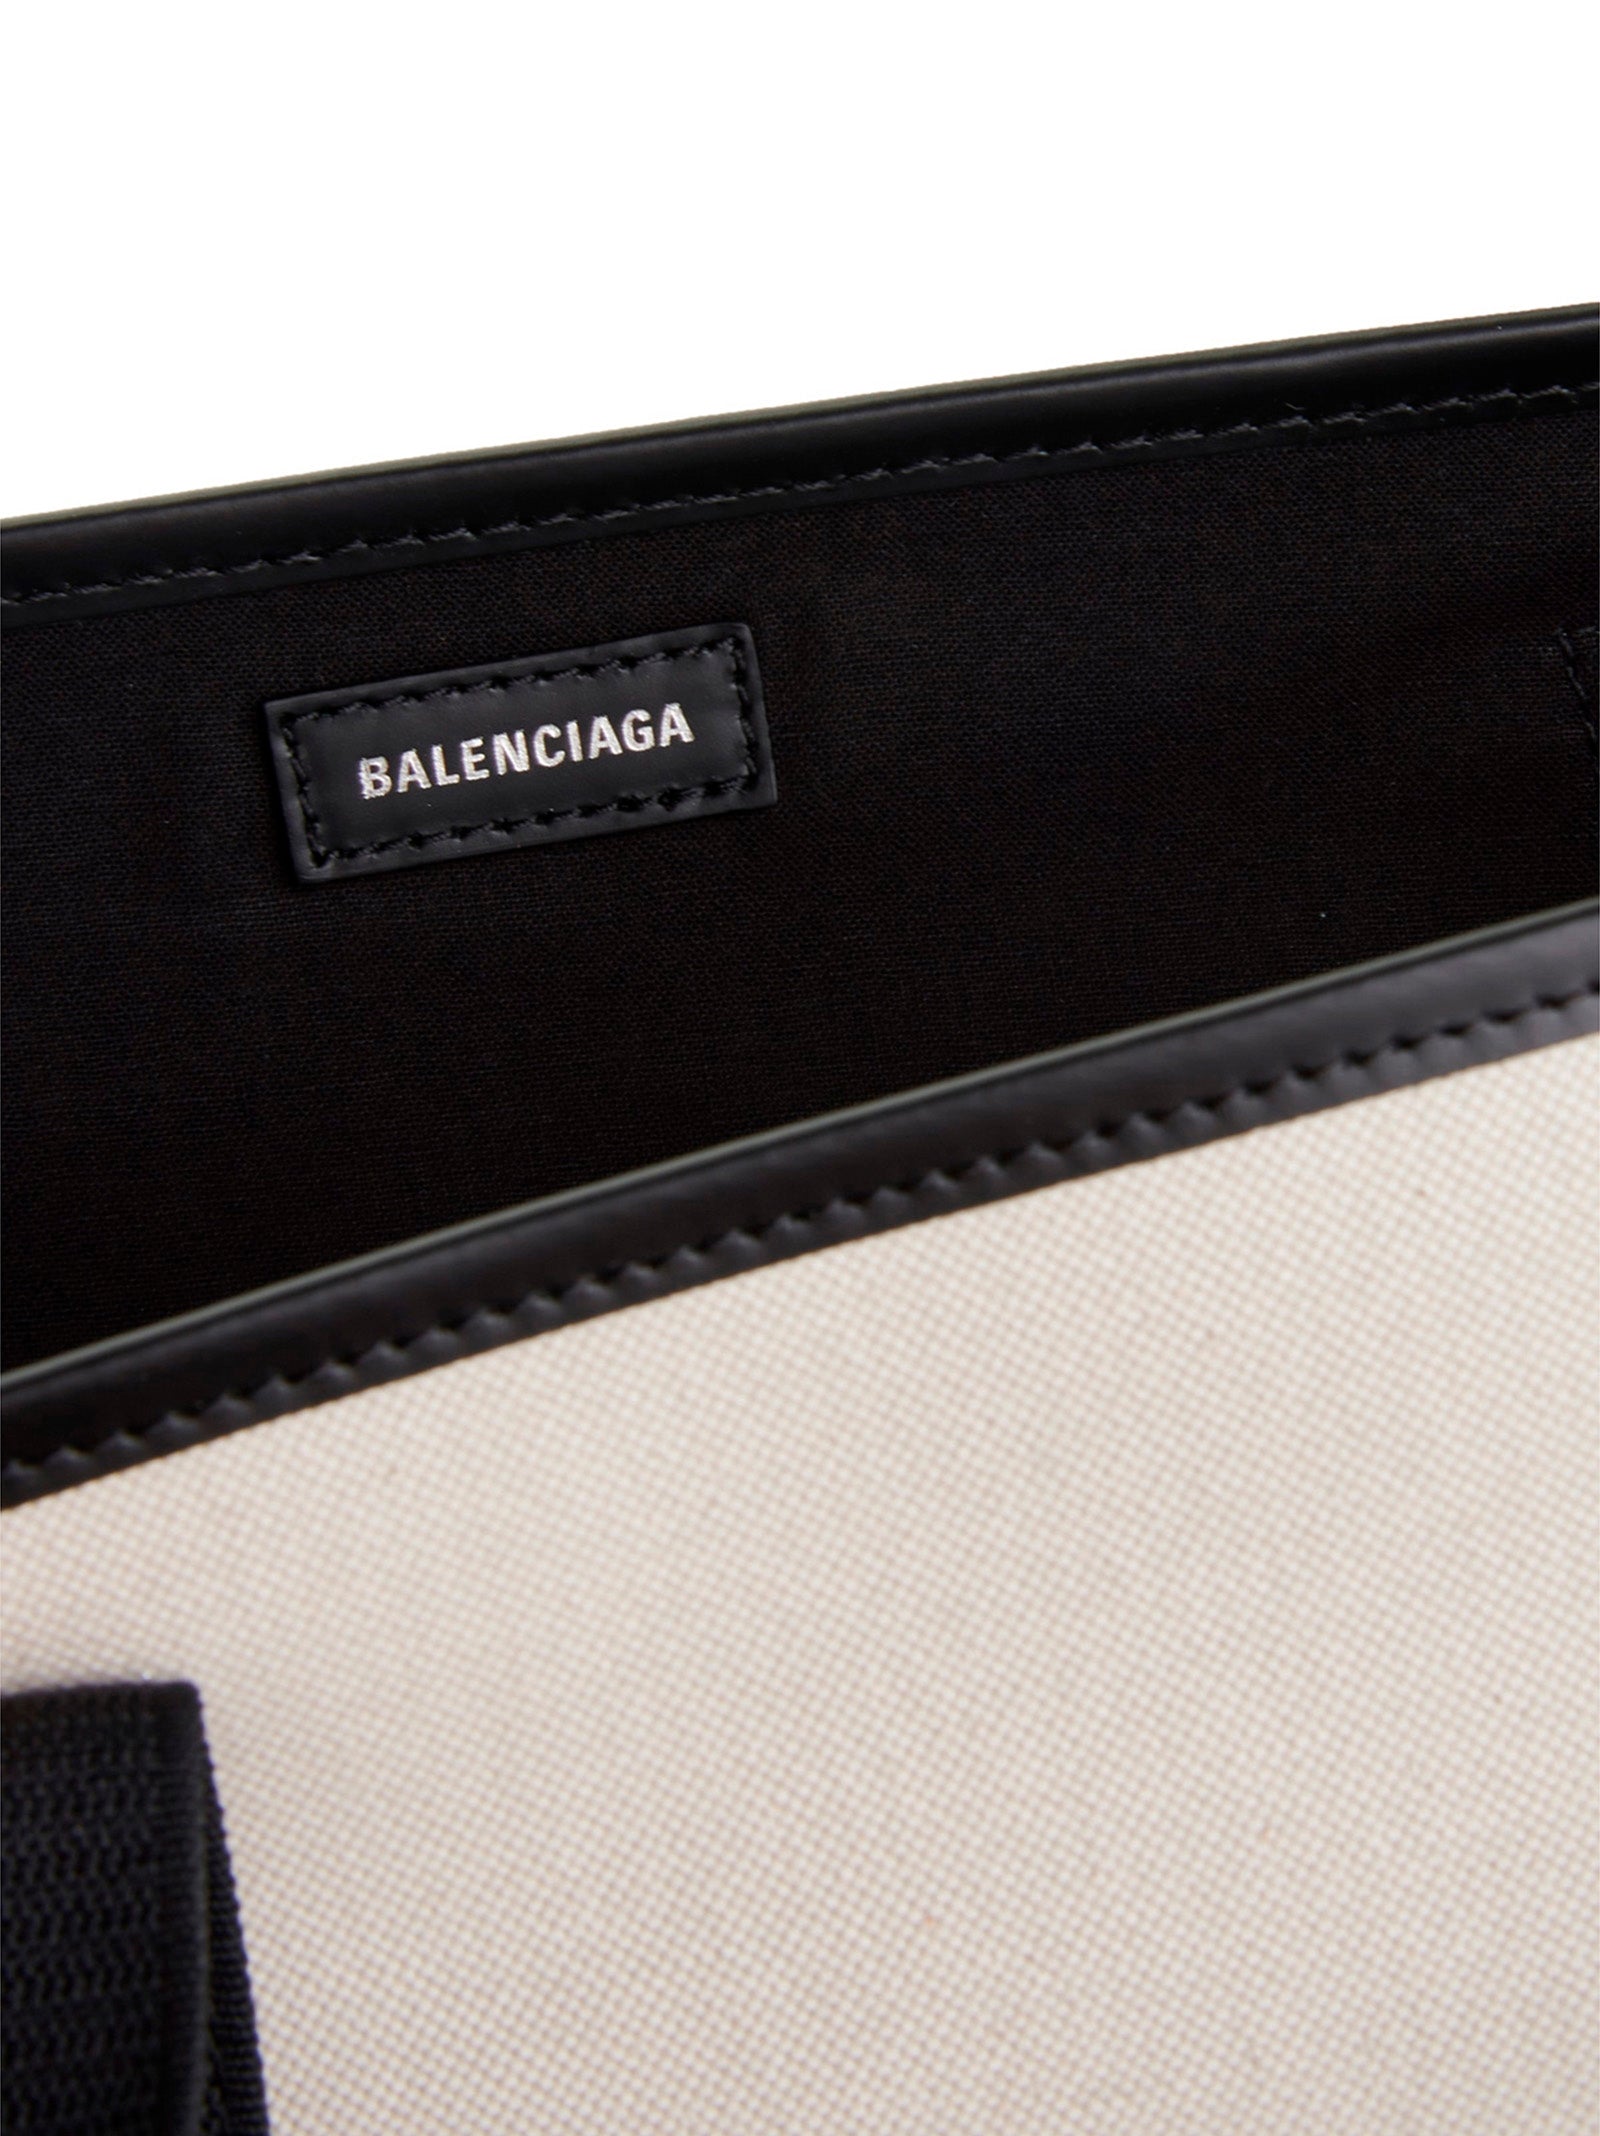 Shop Balenciaga Navy Cabas Tote Bag White/black